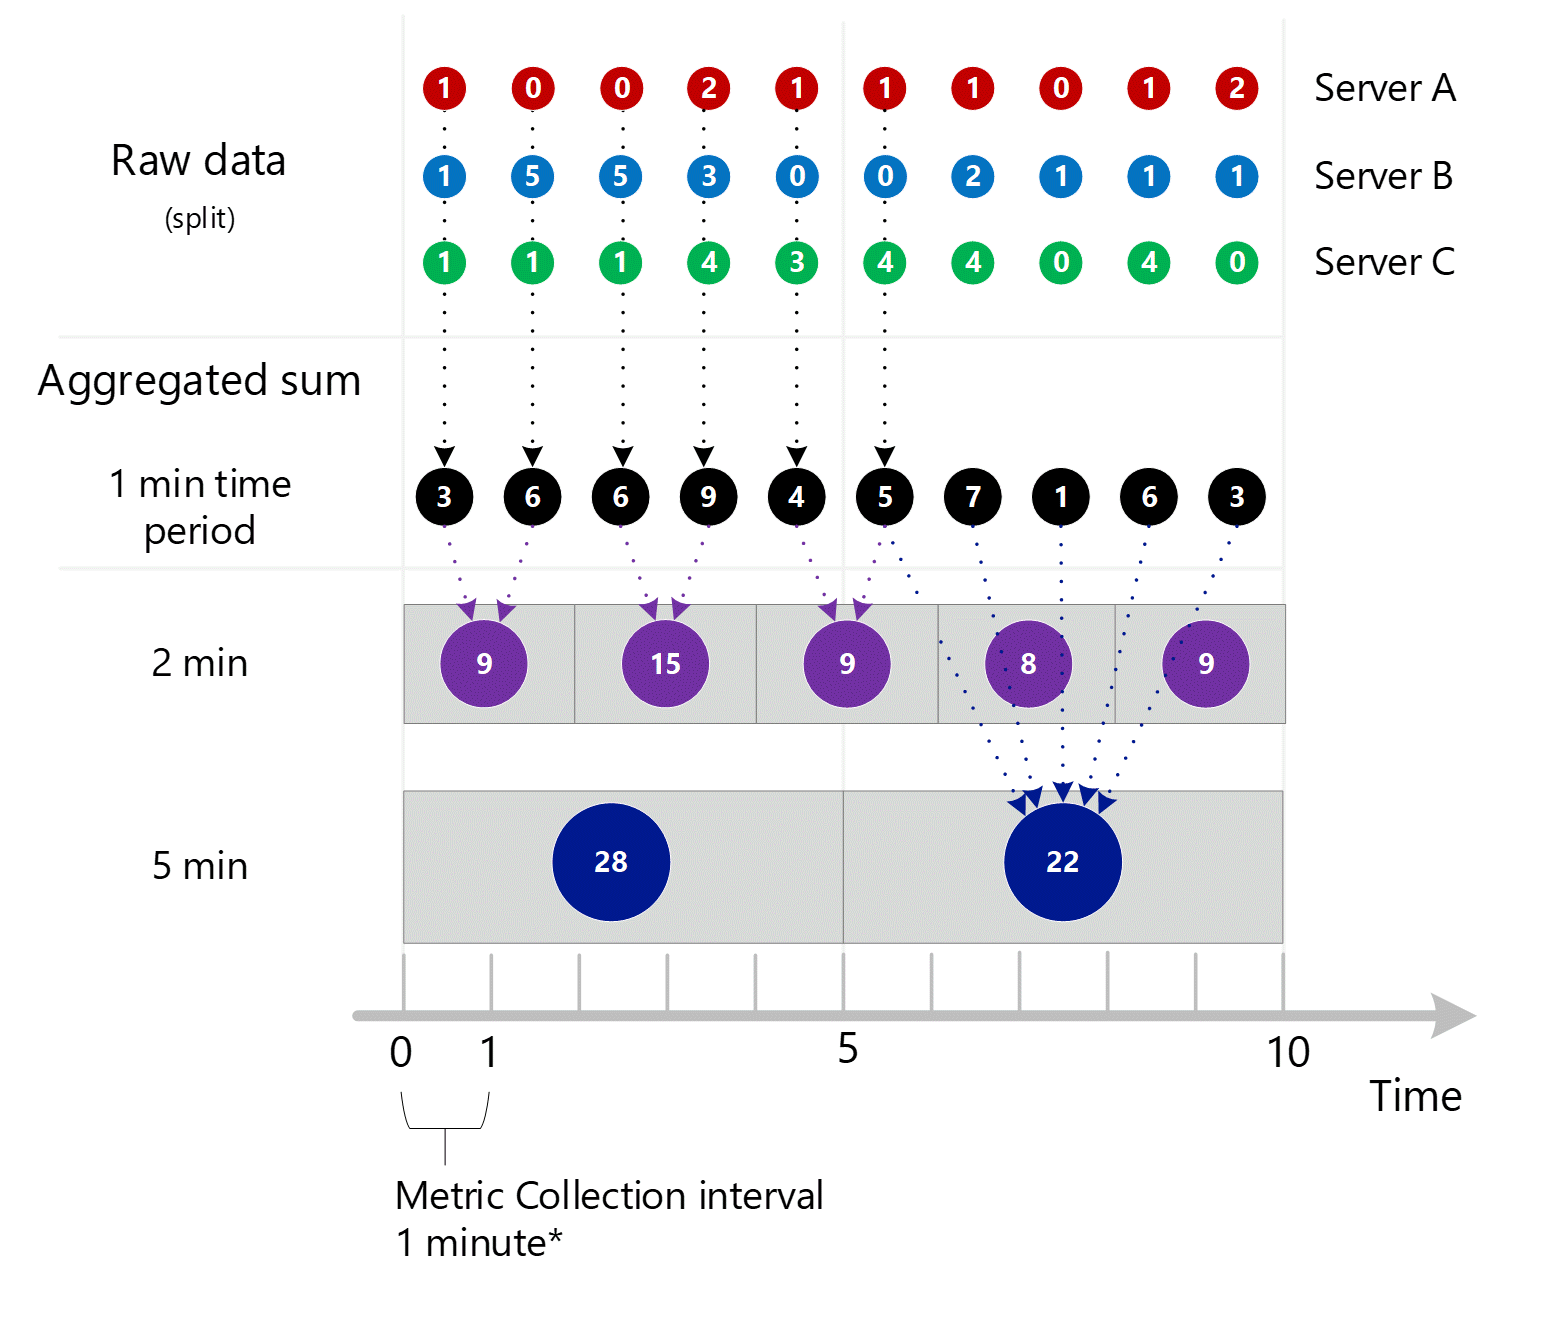 Captura de tela mostrando a consolidação das 3 capturas de tela anteriores. Várias entradas agregadas de 1 minuto na dimensão do servidor agregadas em intervalos de 1 minuto, 2 minutos e 5 minutos. Servidor A, B e C mostrados individualmente